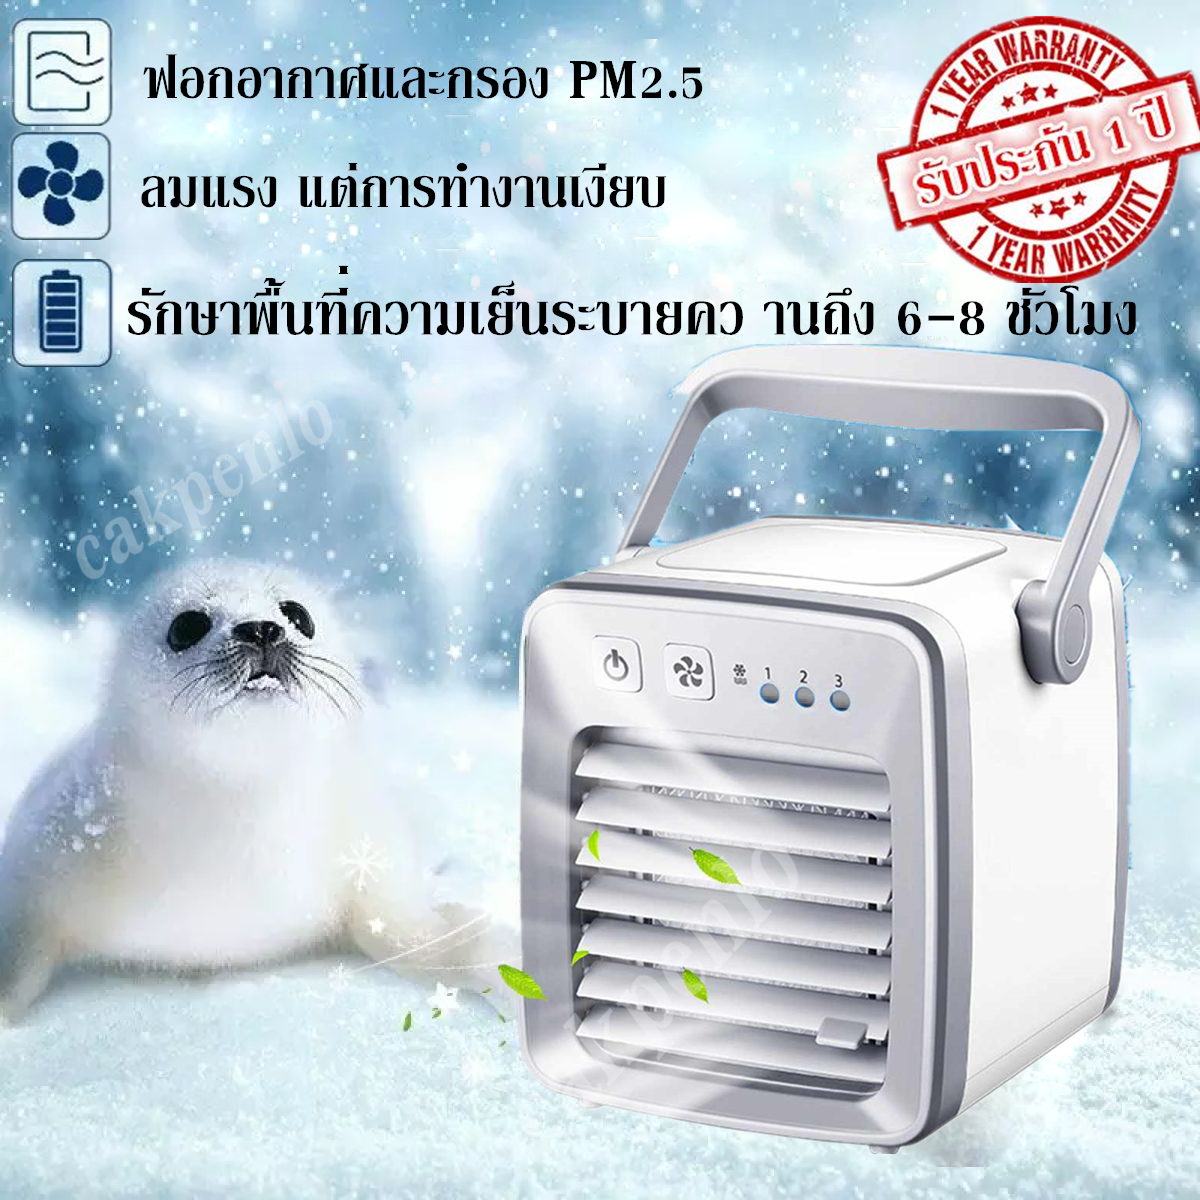 (2020 à¹à¸à¸à¸à¸à¸à¸²à¹à¸«à¸¡à¹) R-Arctic Air cooler à¹à¸à¸£à¸·à¹à¸­à¸à¸à¸³à¸à¸§à¸²à¸¡à¹à¸¢à¹à¸à¸¡à¸´à¸à¸´ à¹à¸à¹à¸ªà¸²à¸¢ USB à¸­à¸£à¹à¸¡à¸´à¸à¸´ à¹à¸­à¸£à¹à¸à¸à¸à¸²í ½í²¦ à¹à¸­à¸£à¹à¸à¸±à¹à¸à¹à¸à¹à¸°à¸à¸à¸²à¸à¹à¸¥à¹à¸ à¹à¸à¹à¹à¸à¸à¸µà¹à¸à¸³à¸à¸²à¸ à¸­à¸­à¸à¸à¸´à¸¨ à¸à¸±à¸à¸¥à¸¡à¹à¸­à¹à¸¢à¹à¸ à¸à¸±à¸à¸¥à¸¡à¹à¸­à¸£à¹à¹à¸¢à¹à¸ à¸à¸à¸²à¸à¹à¸¥à¹à¸à¸à¸à¸à¸²à¸à¹à¸²à¸¢ à¹à¸£à¸à¸¥à¸¡ 3à¸£à¸°à¸à¸±à¸ à¸à¸±à¸à¸¥à¸¡à¹à¸­à¸£à¹ à¸­à¸à¸¸à¸ à¸¹à¸¡à¸´à¸¥à¸à¸¥à¸à¹à¸£à¹à¸§ à¸à¸­à¸à¸­à¸²à¸à¸²à¸¨à¹à¸à¹ QST Personal cooling Min